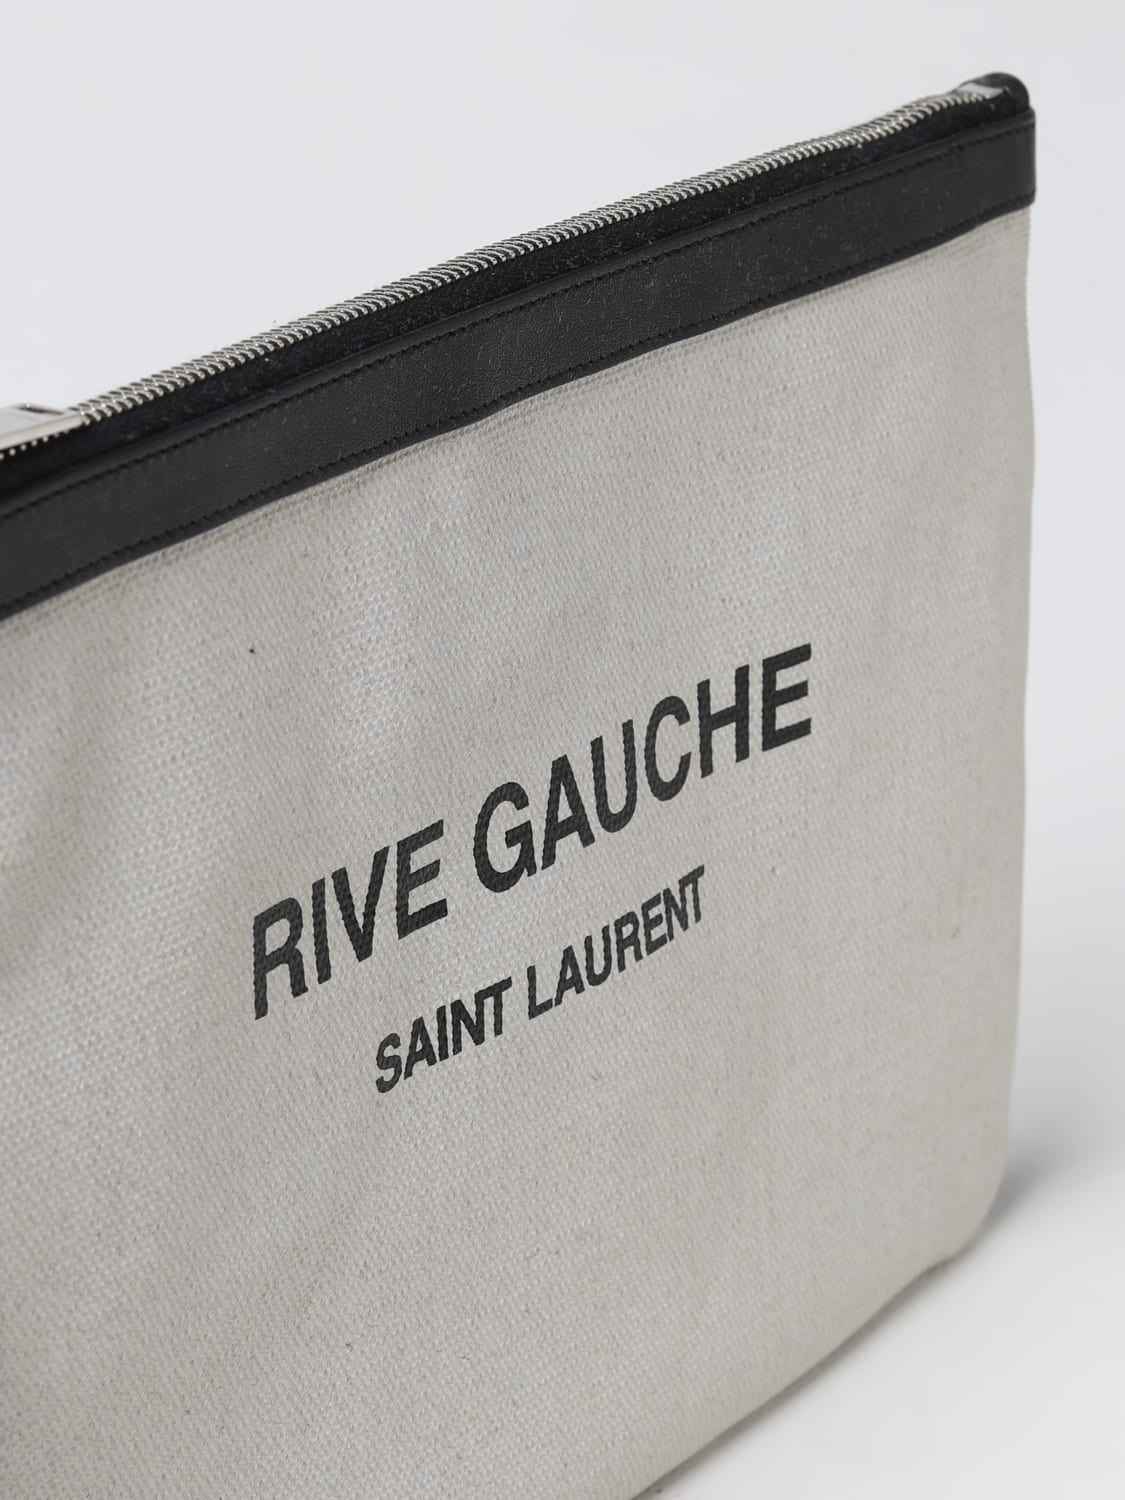 Saint Laurent Rive Gauche Clutch